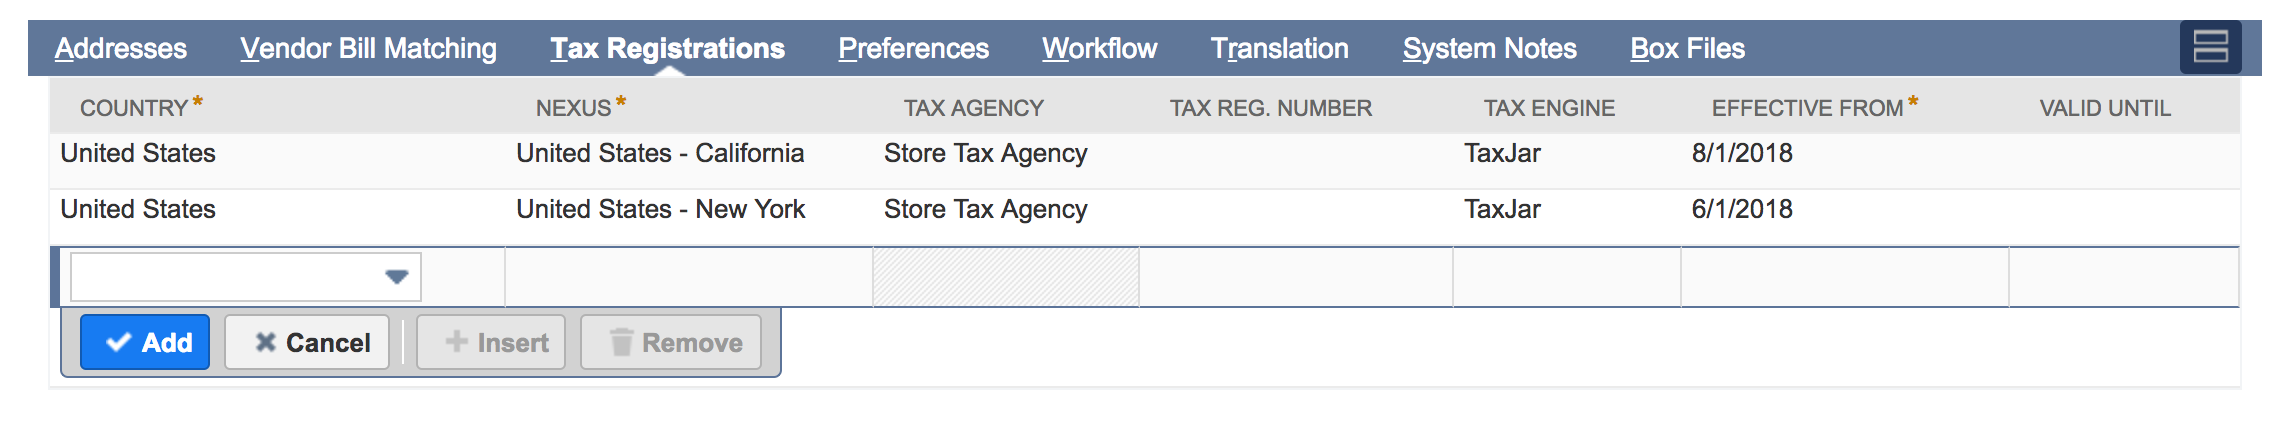 SuiteTax Tax Registrations